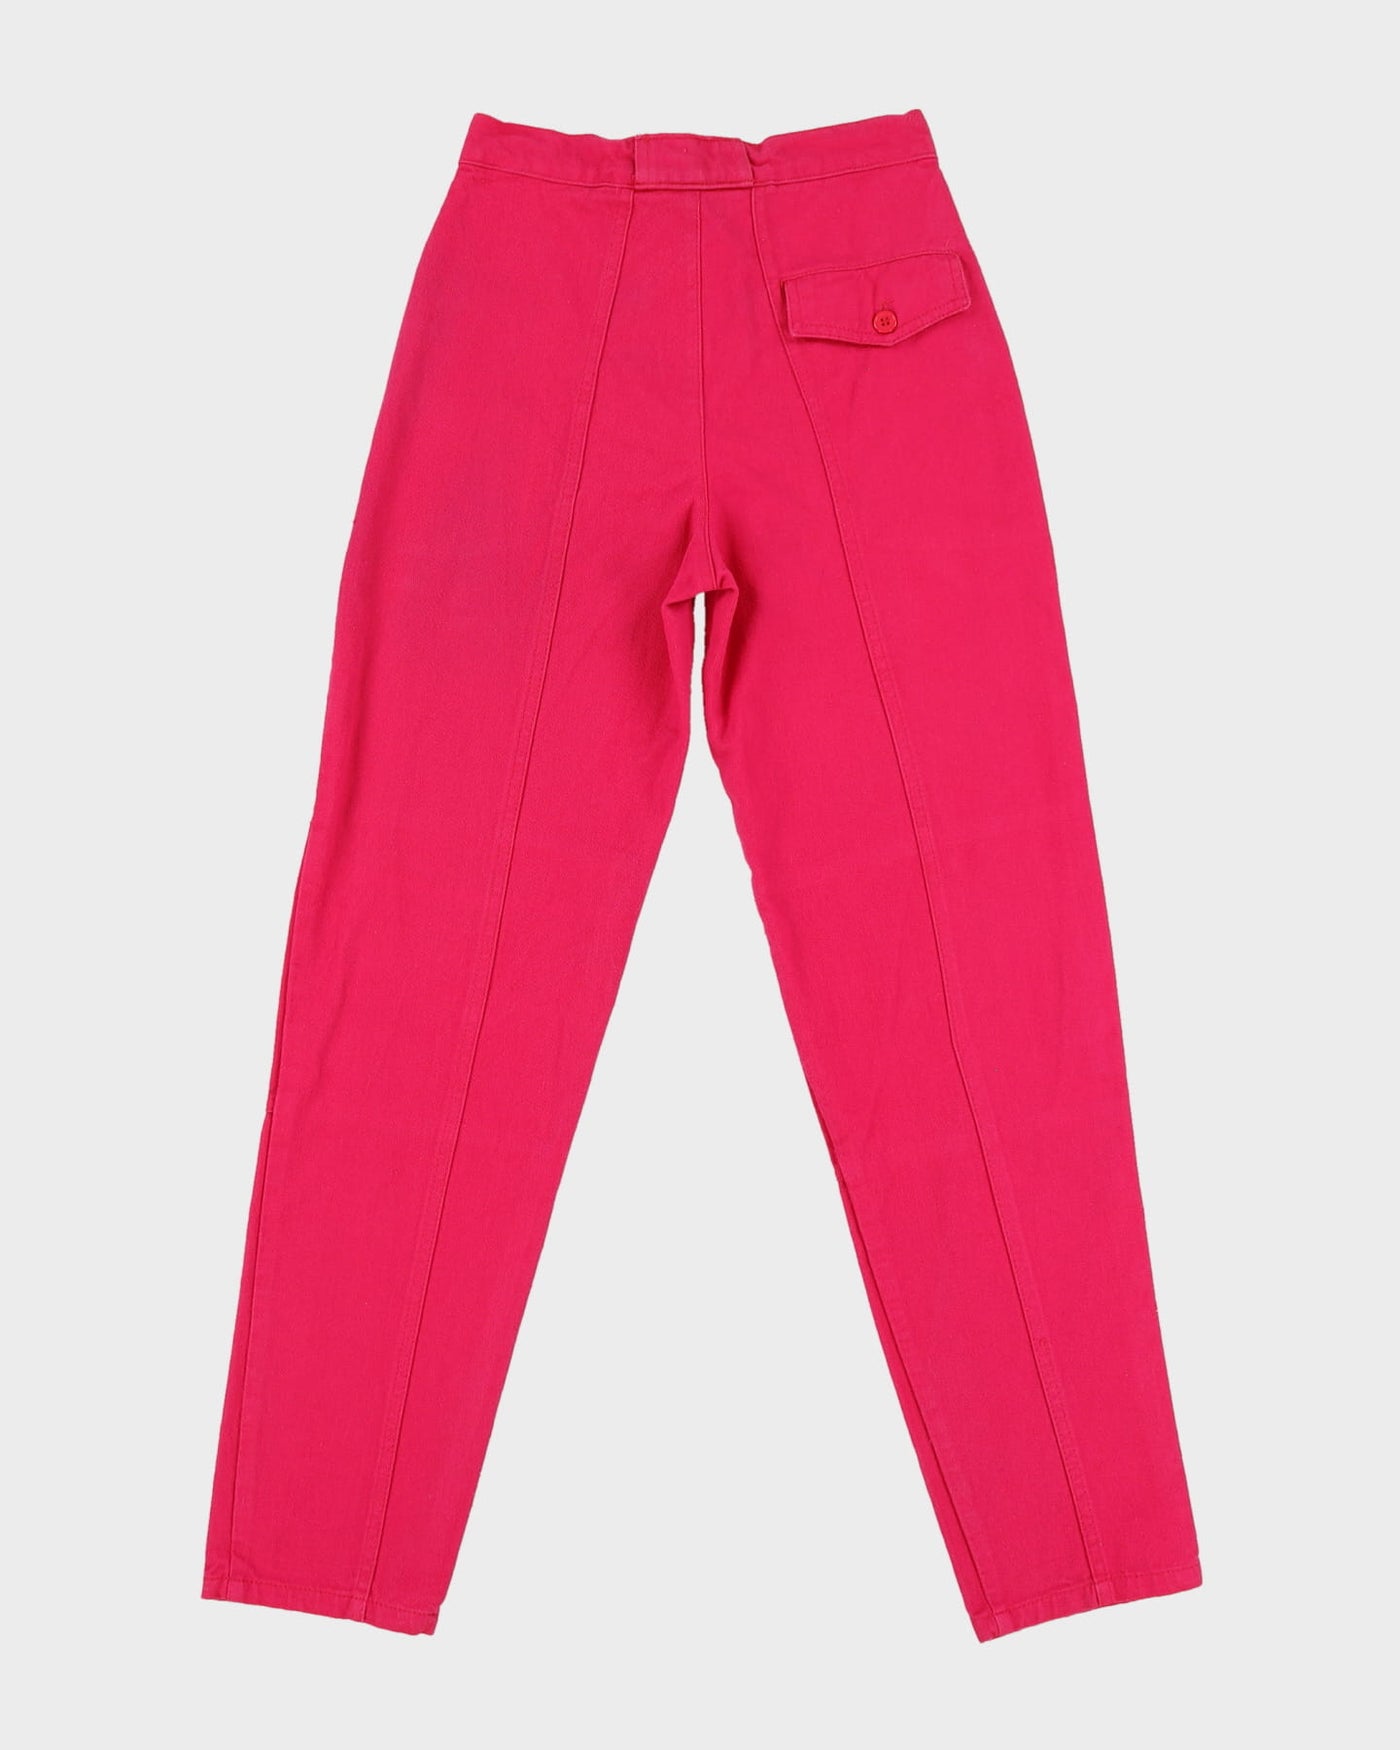 Vintage 1990s Pink Cotton Jeans - XS